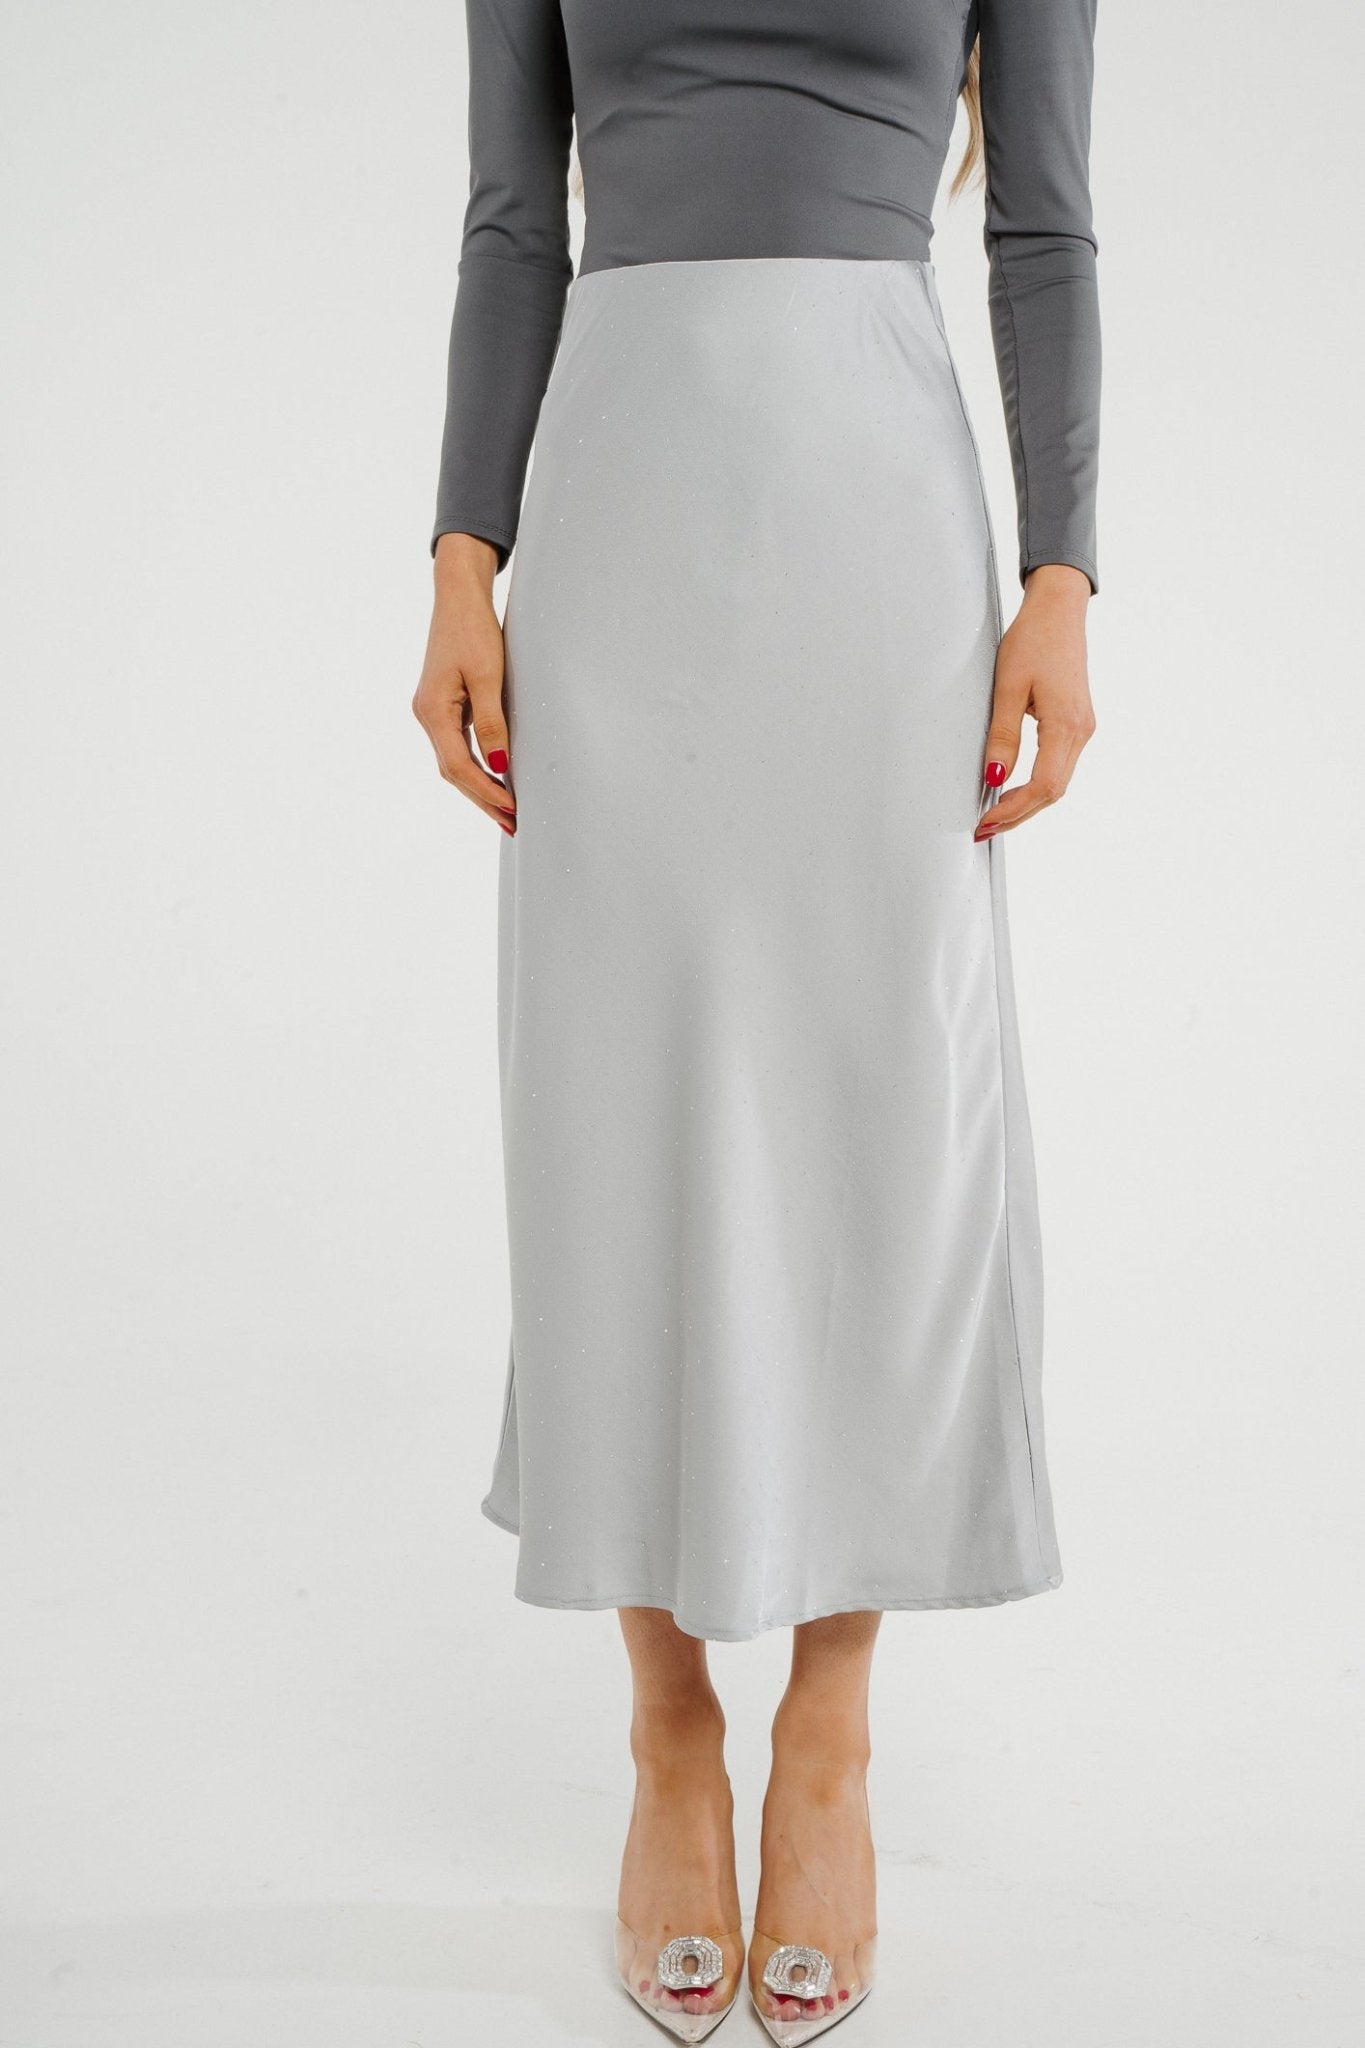 Kate Embellished Satin Midi Skirt In Silver - The Walk in Wardrobe